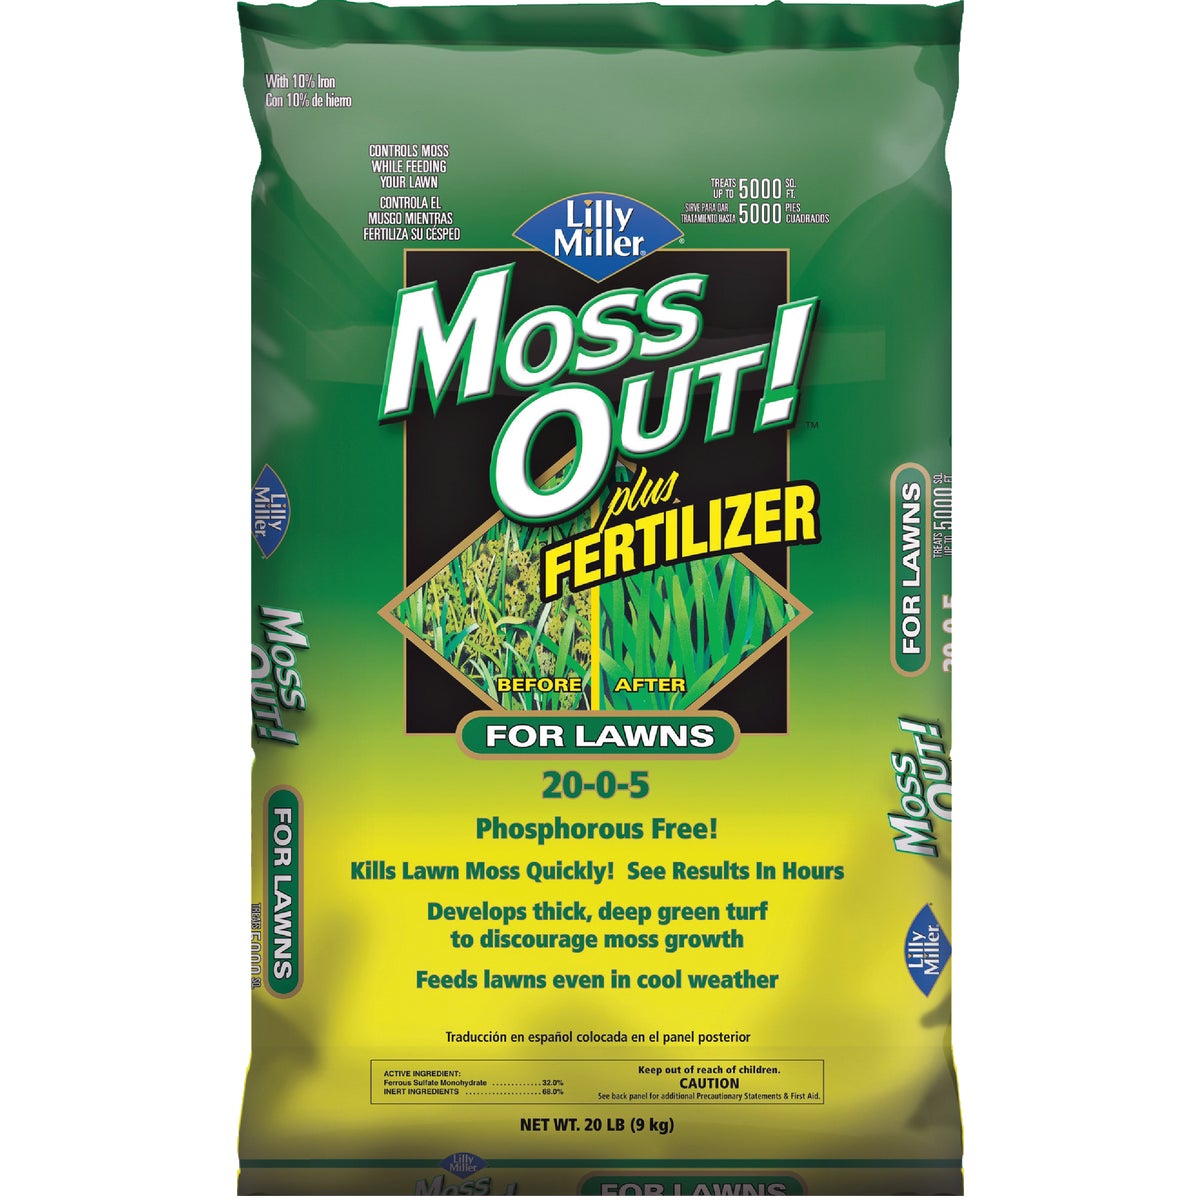 Moss Control Plus Fertilizer